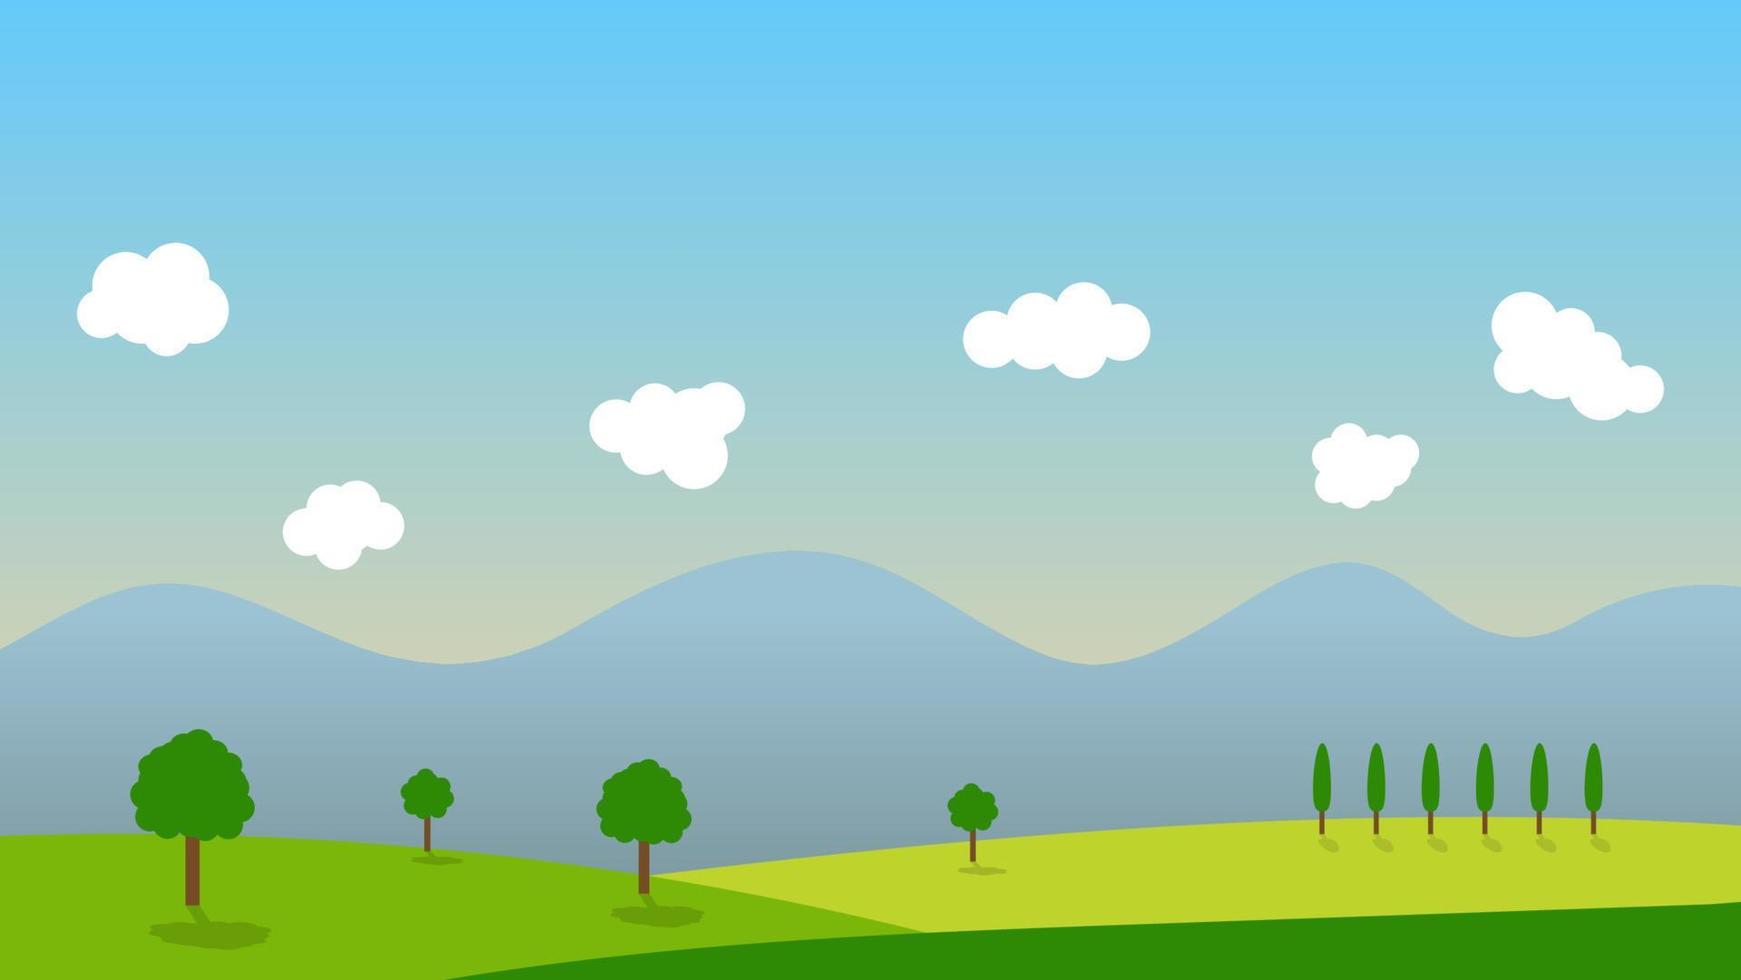 paesaggio cartone animato scena con alberi verdi sulle colline e soffice nuvola bianca sullo sfondo del cielo blu estivo vettore